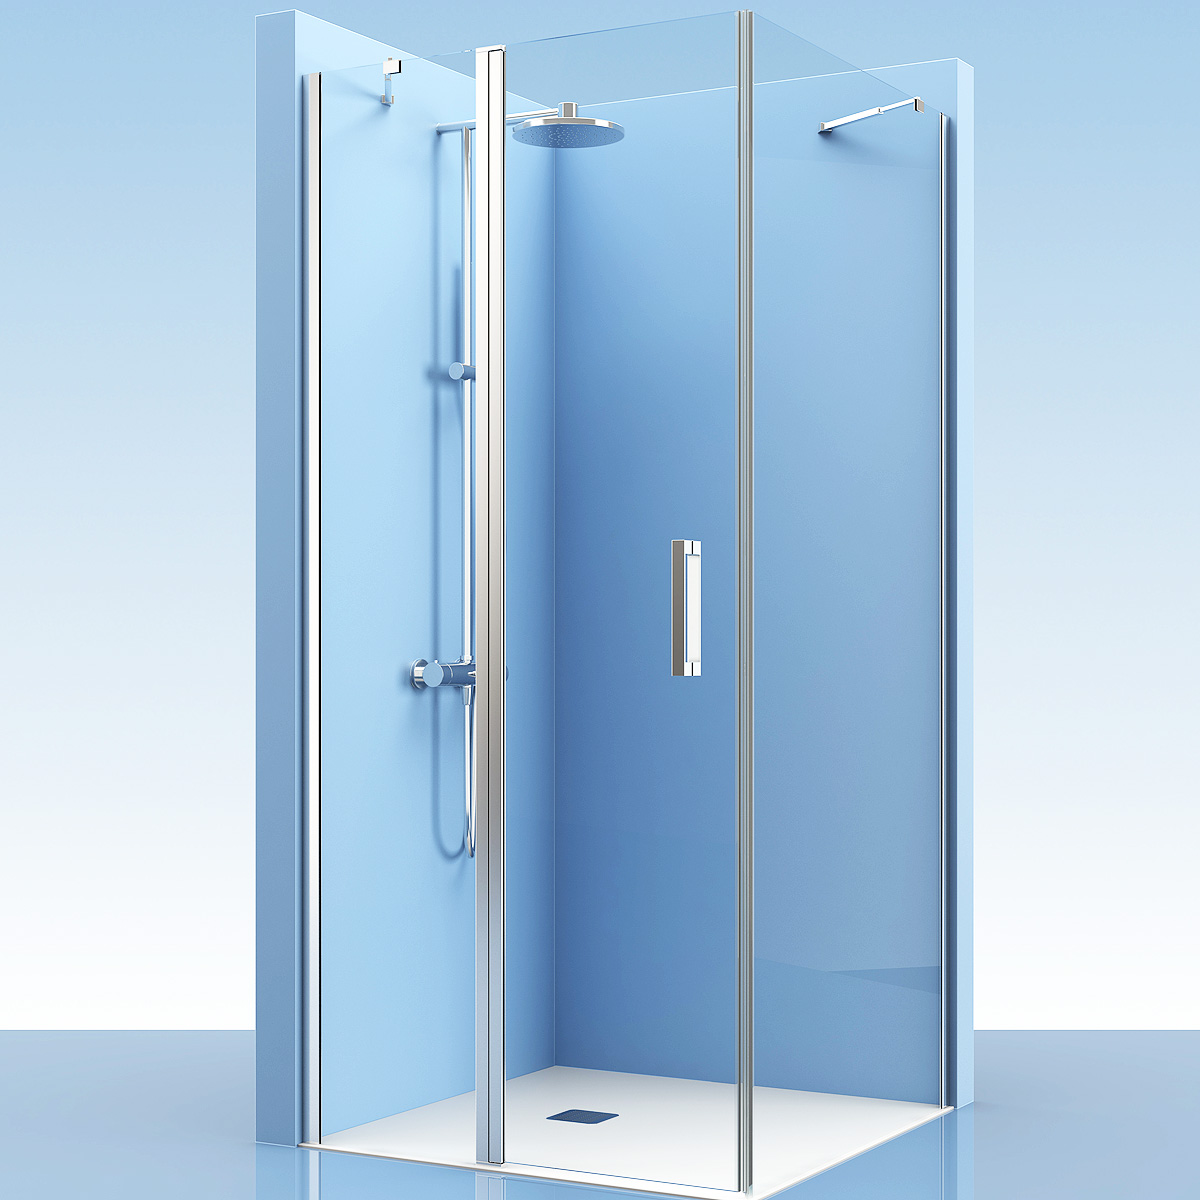 Mampara de ducha fija con una puerta abatible - Ideal Mamparas